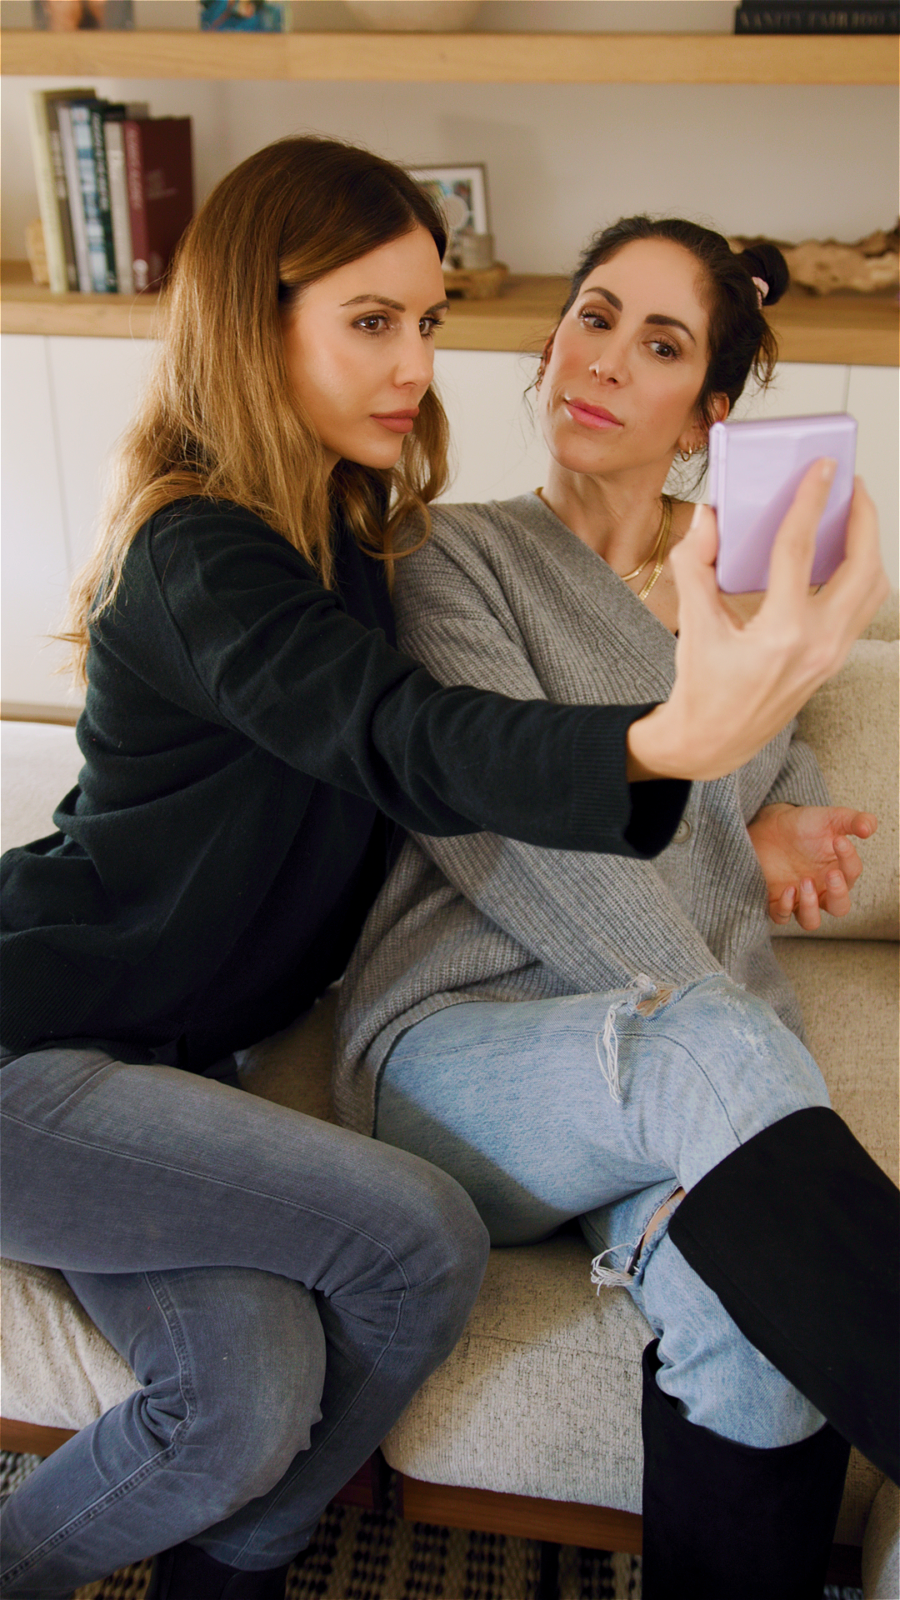 sam hyatt and sarah howard taking selfie on samsung phone